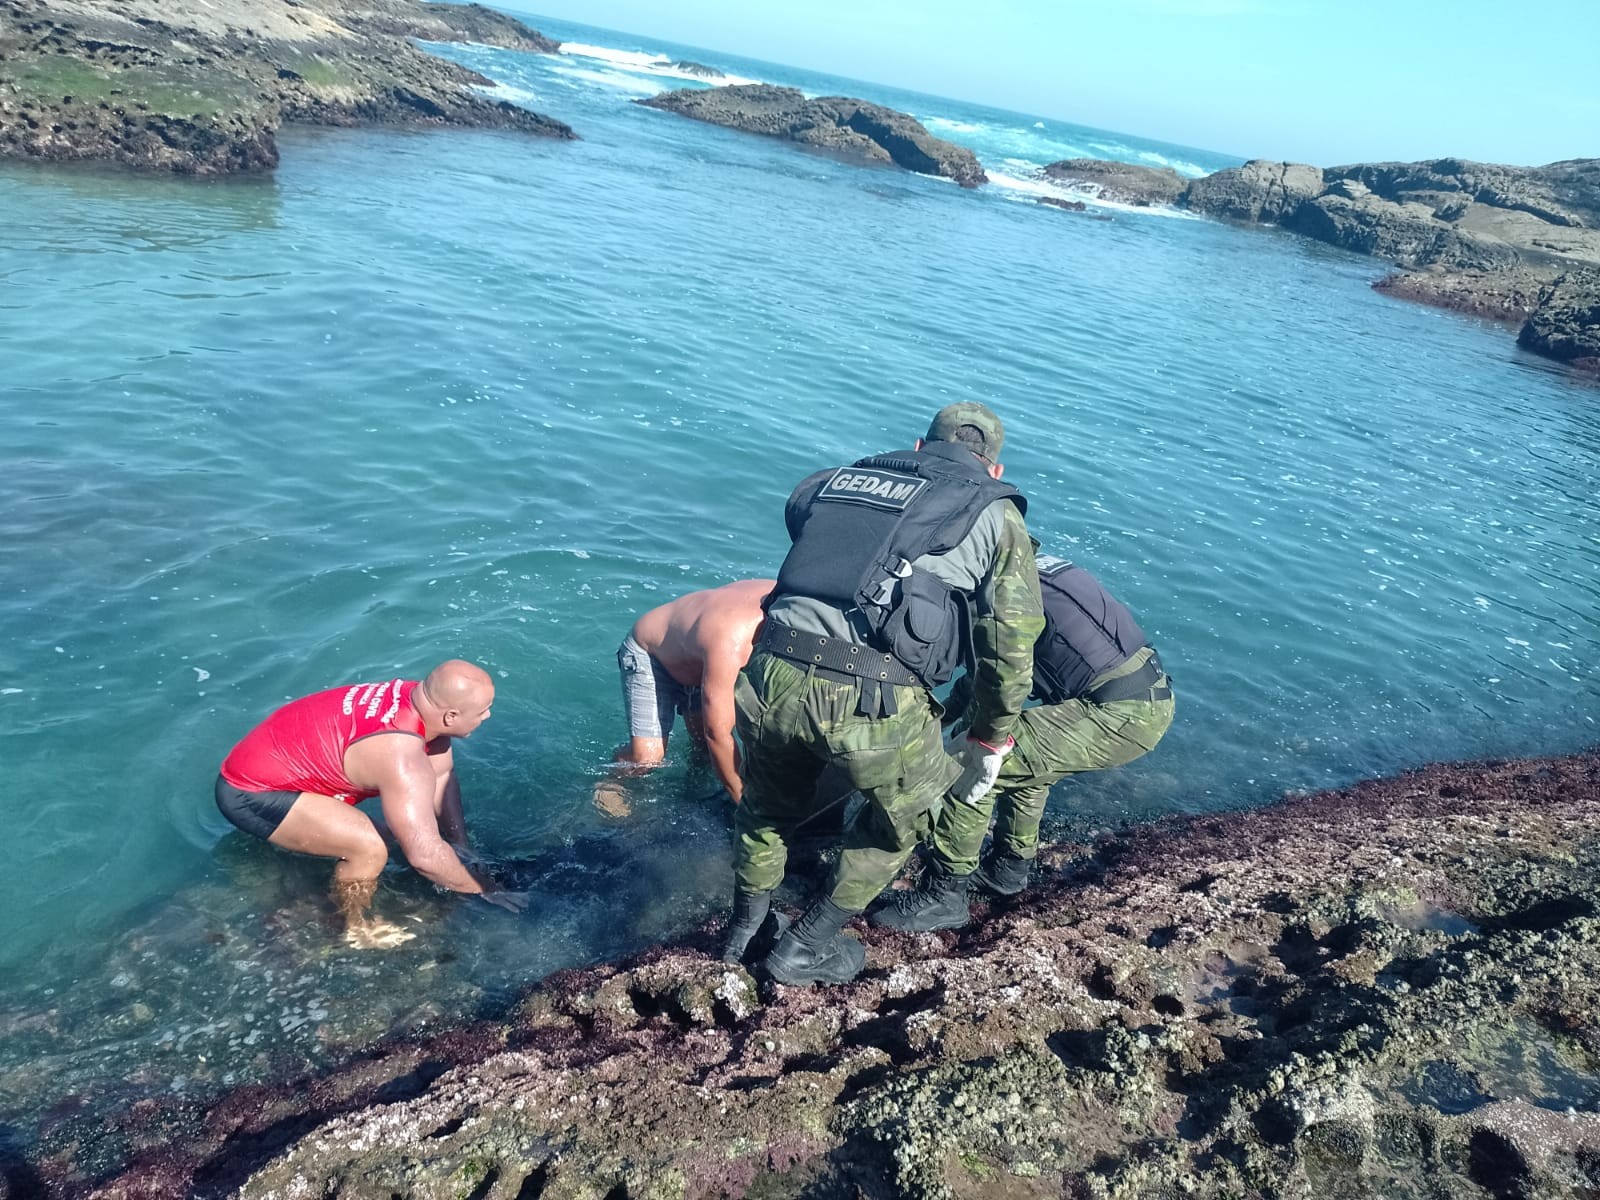 Capivara ferida é resgatada em meio às pedras no mar de Maricá, no RJ